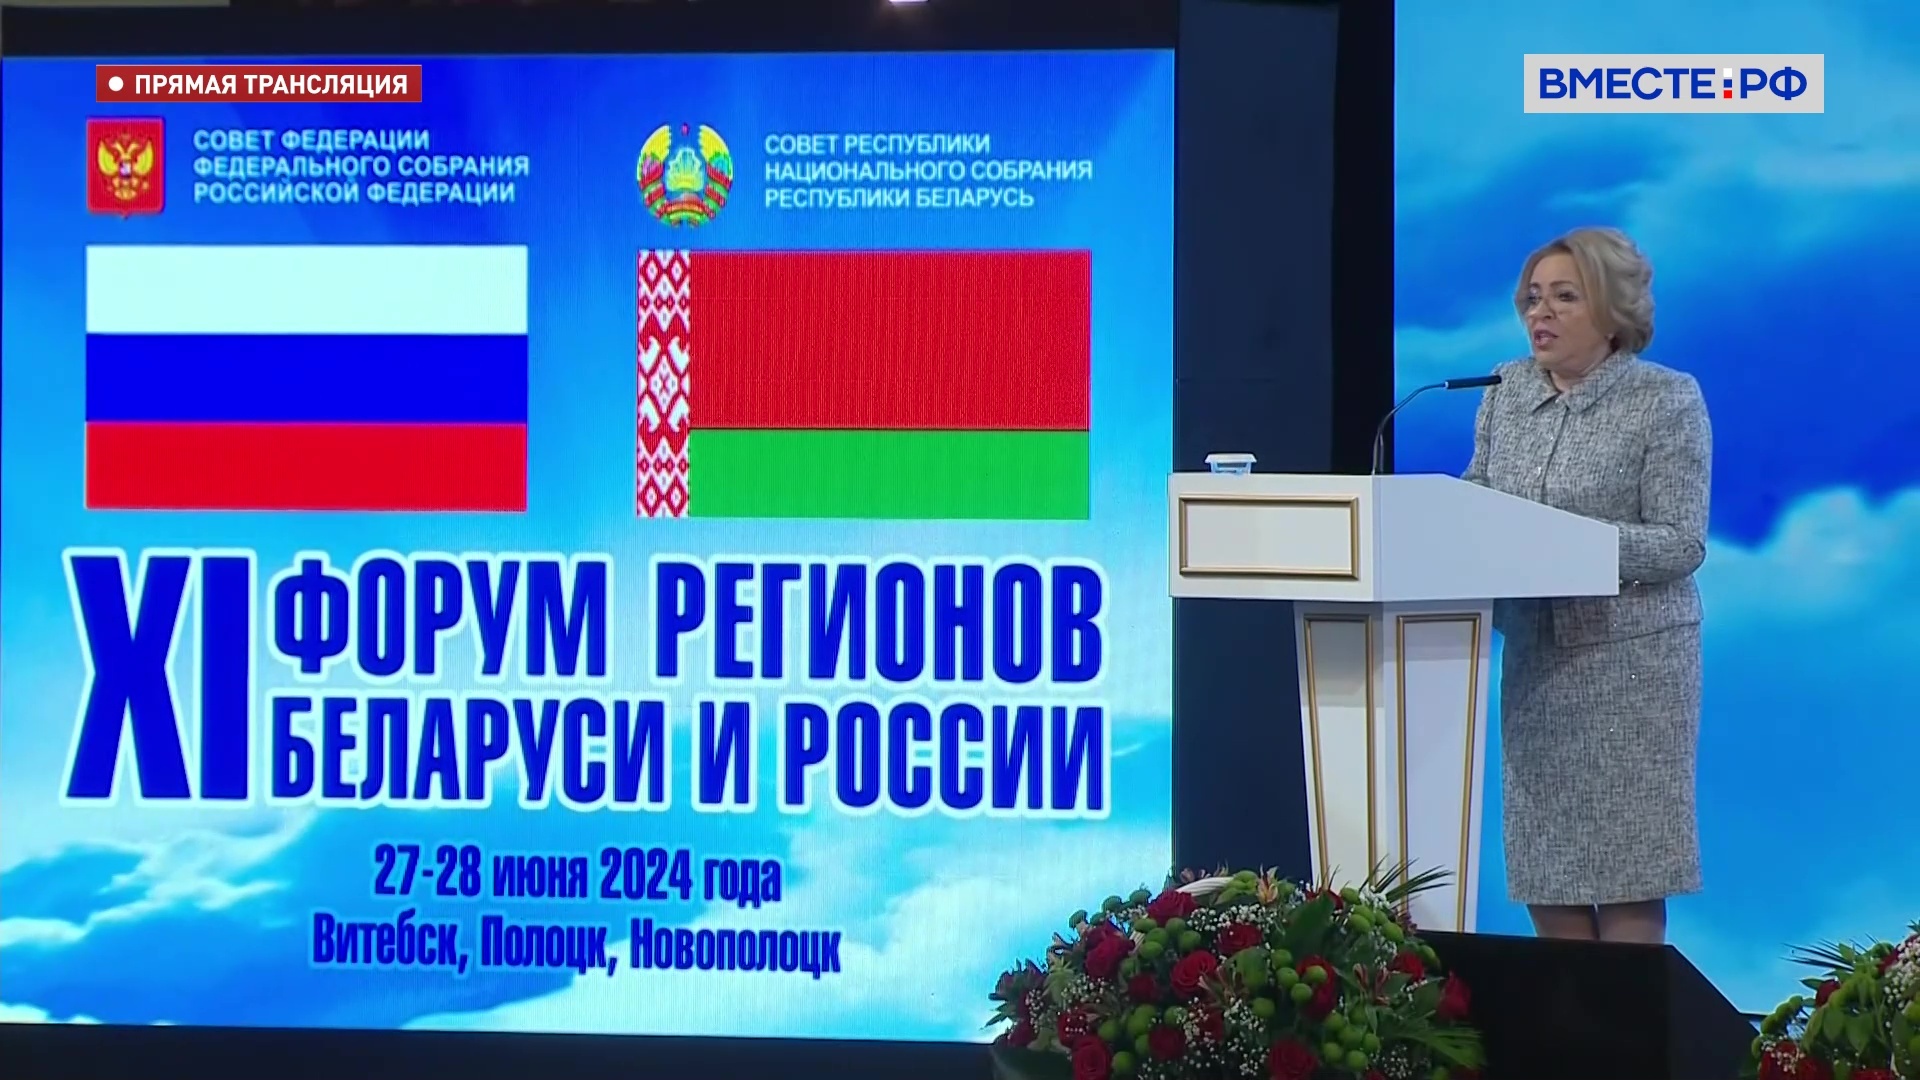 Россия и Беларусь должны стать лидерами в ключевых отраслях, уверена Матвиенко